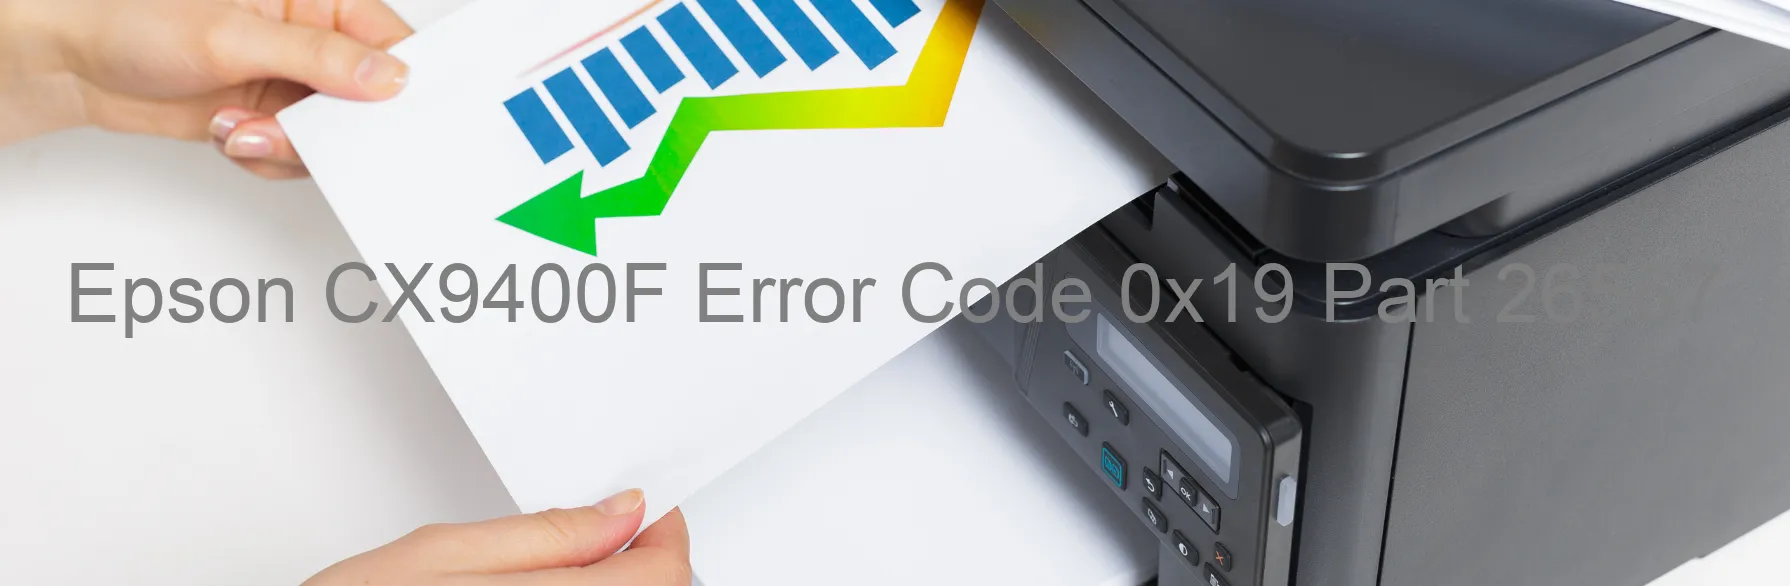 Epson CX9400F Error Code 0x19 Part 26567